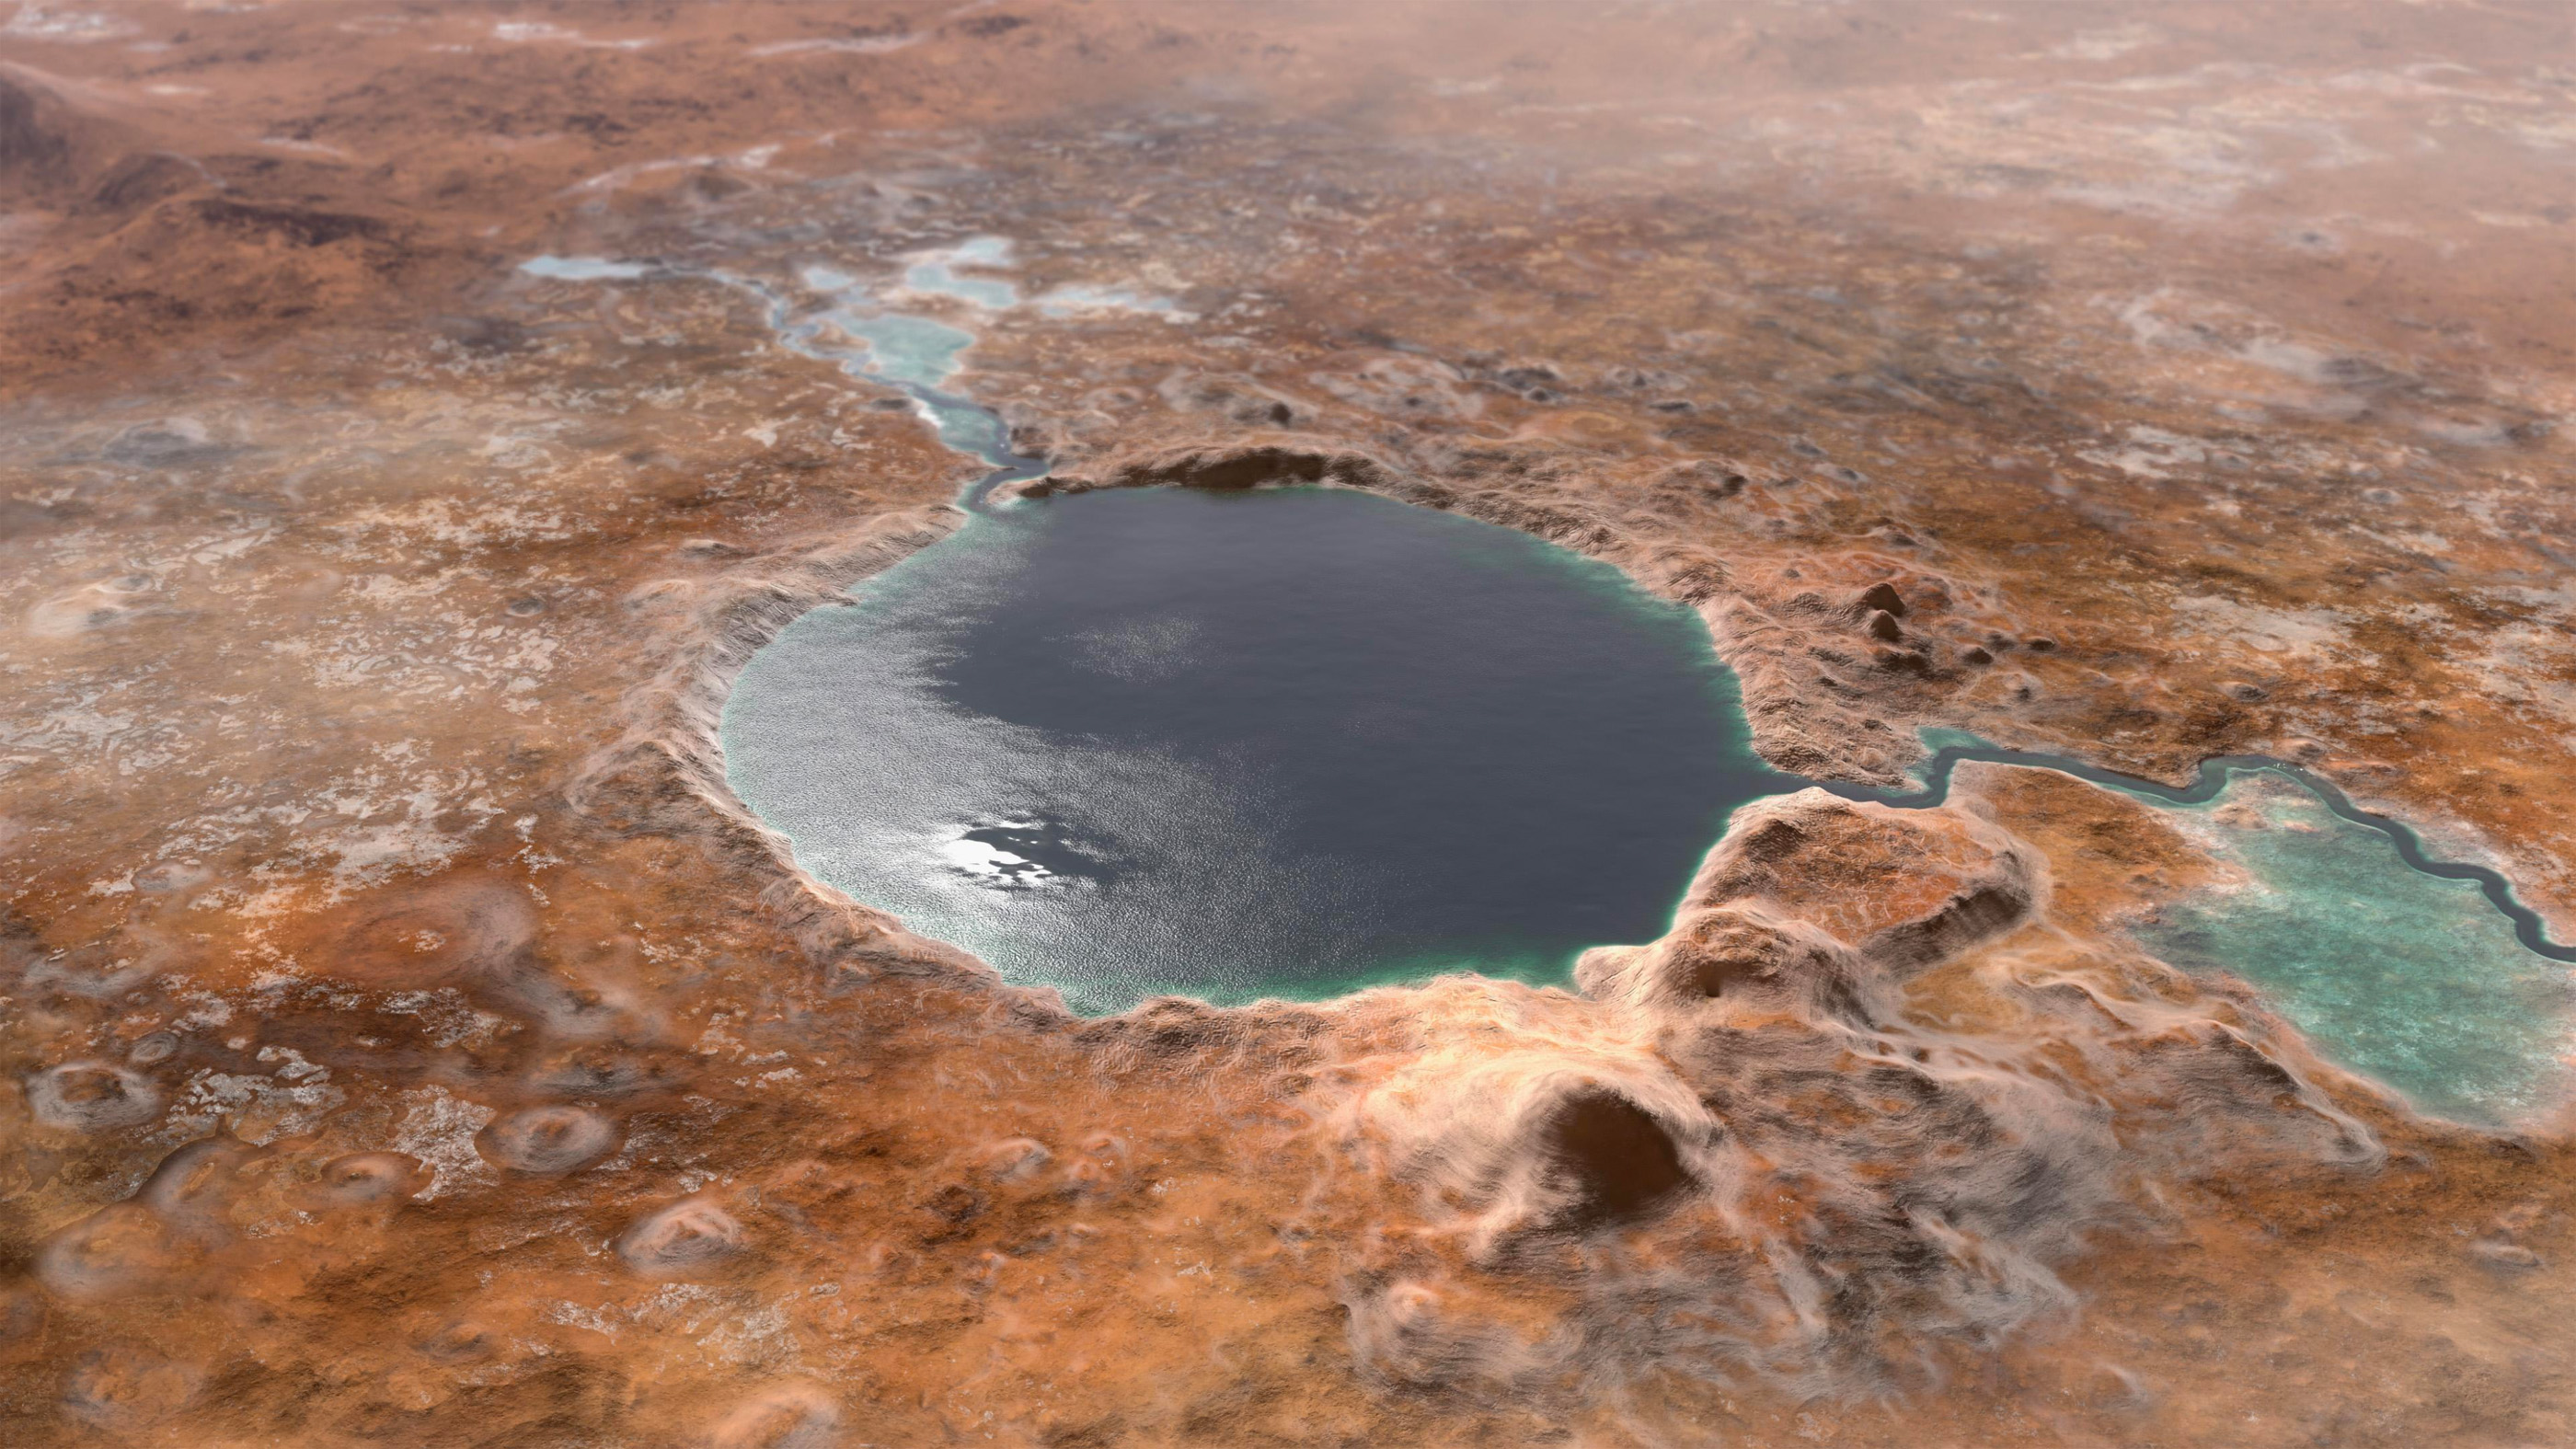 Images du cratère Jezero, où Perseverance touchera Mars.